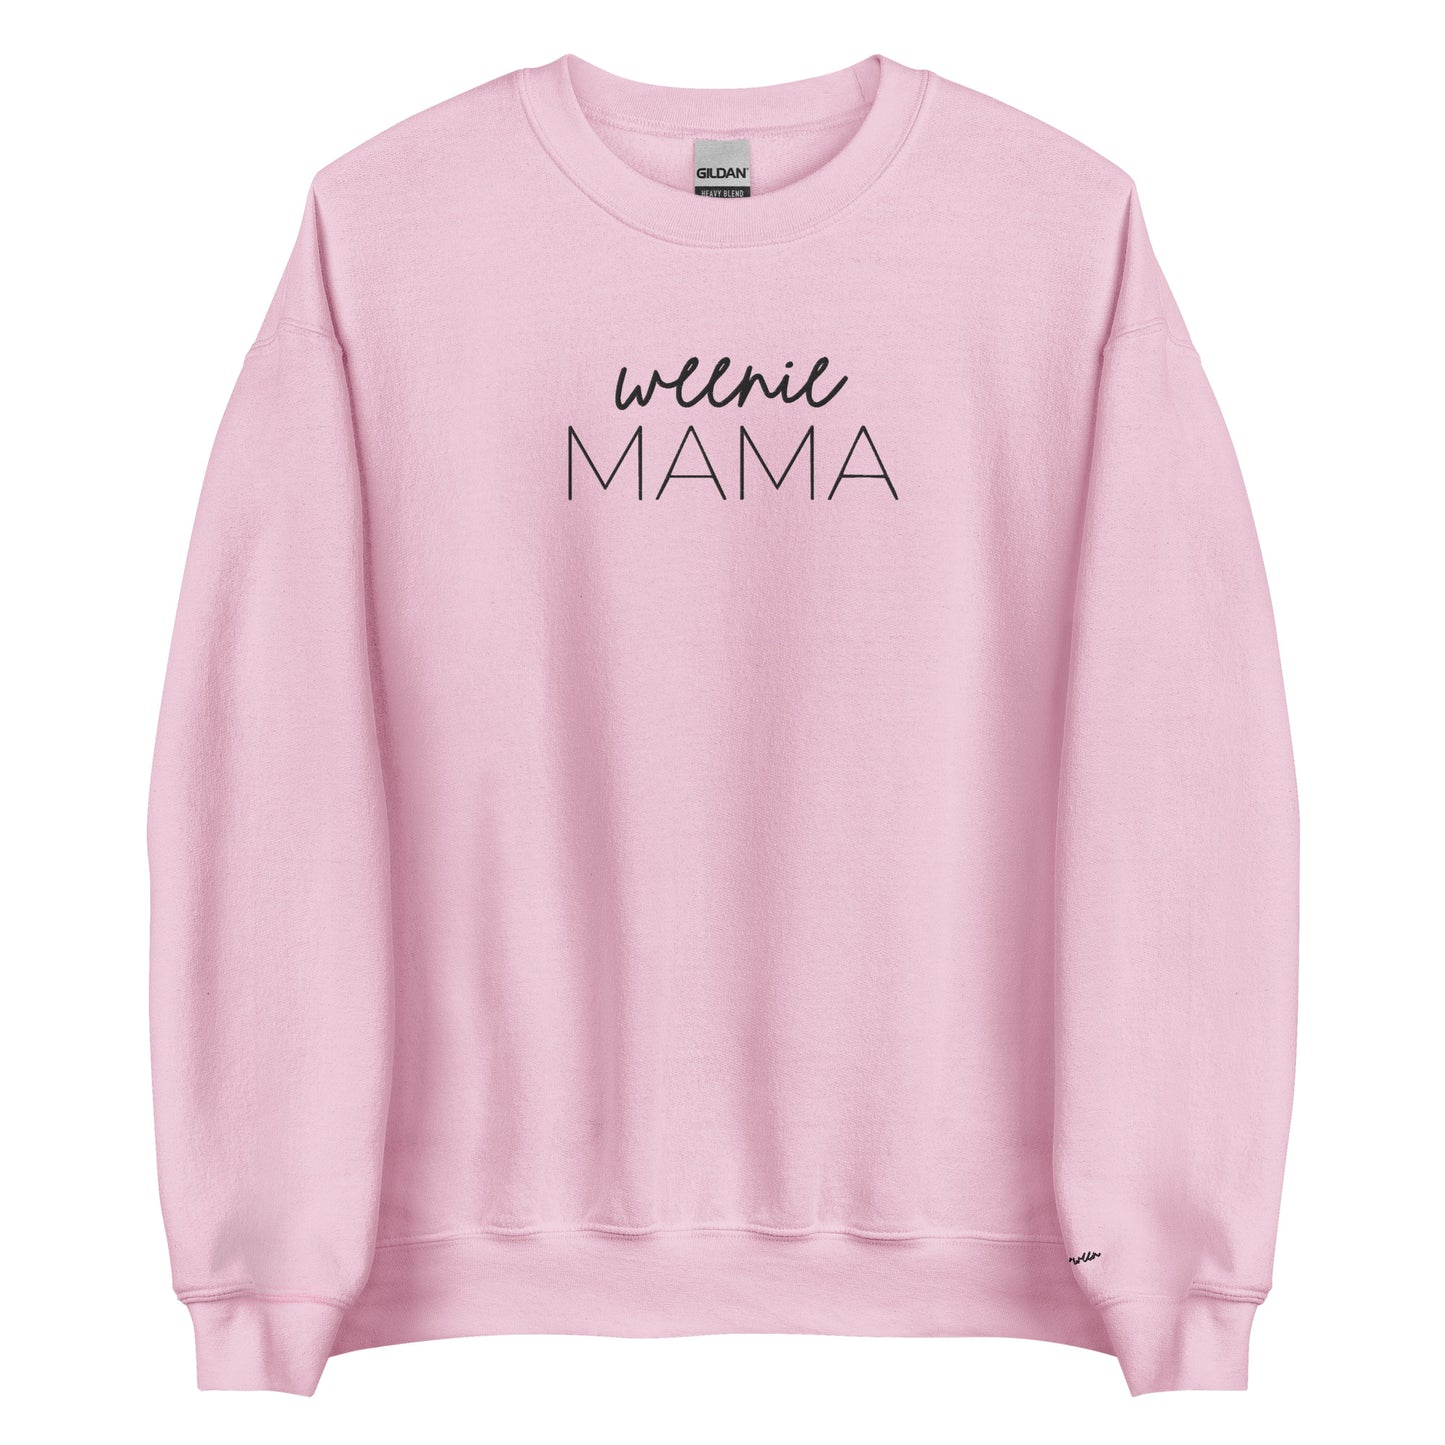 Embroidered Sweatshirt - WEENIE MAMA